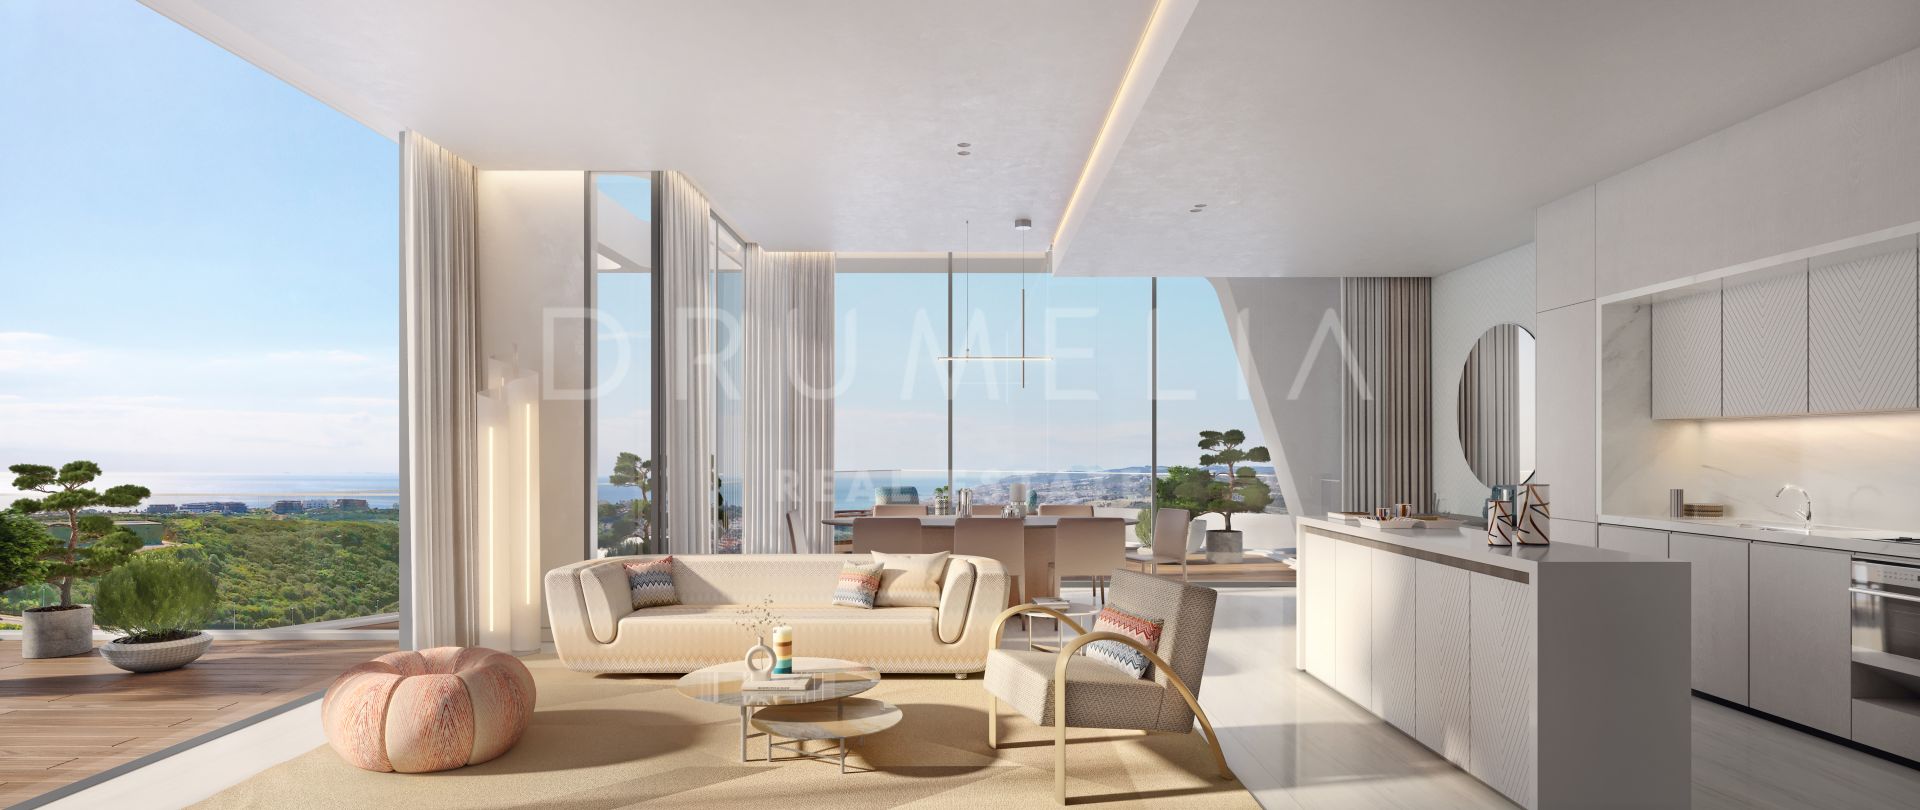 Неординарная новая современная дизайнерская квартира с панорамой на море, Finca Cortesin, Касарес